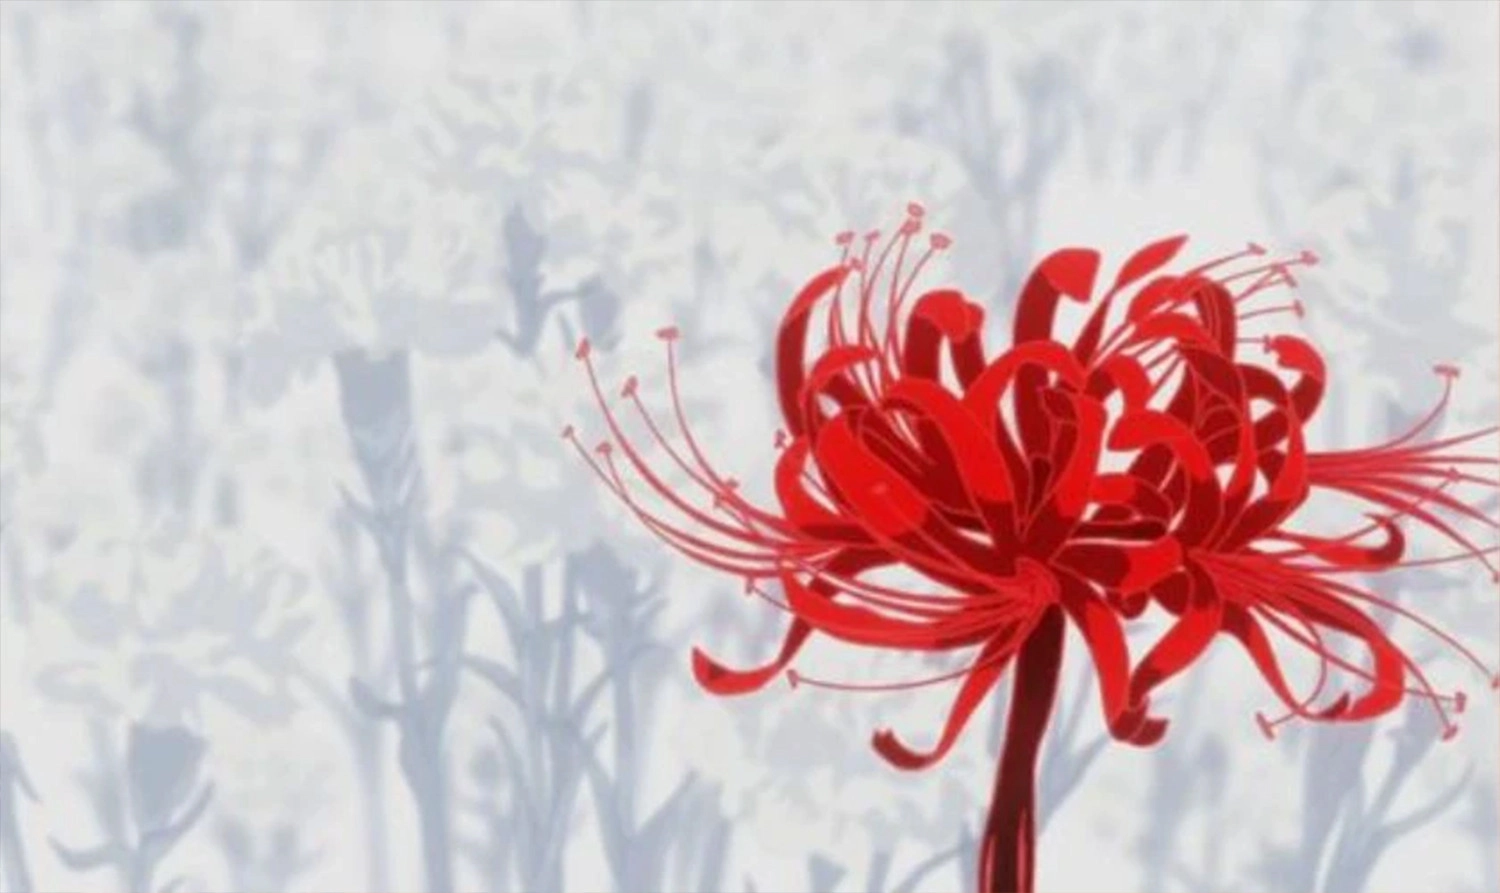  Ảnh nền hoa bỉ ngạn đỏ anime hoạt hình cho máy tính